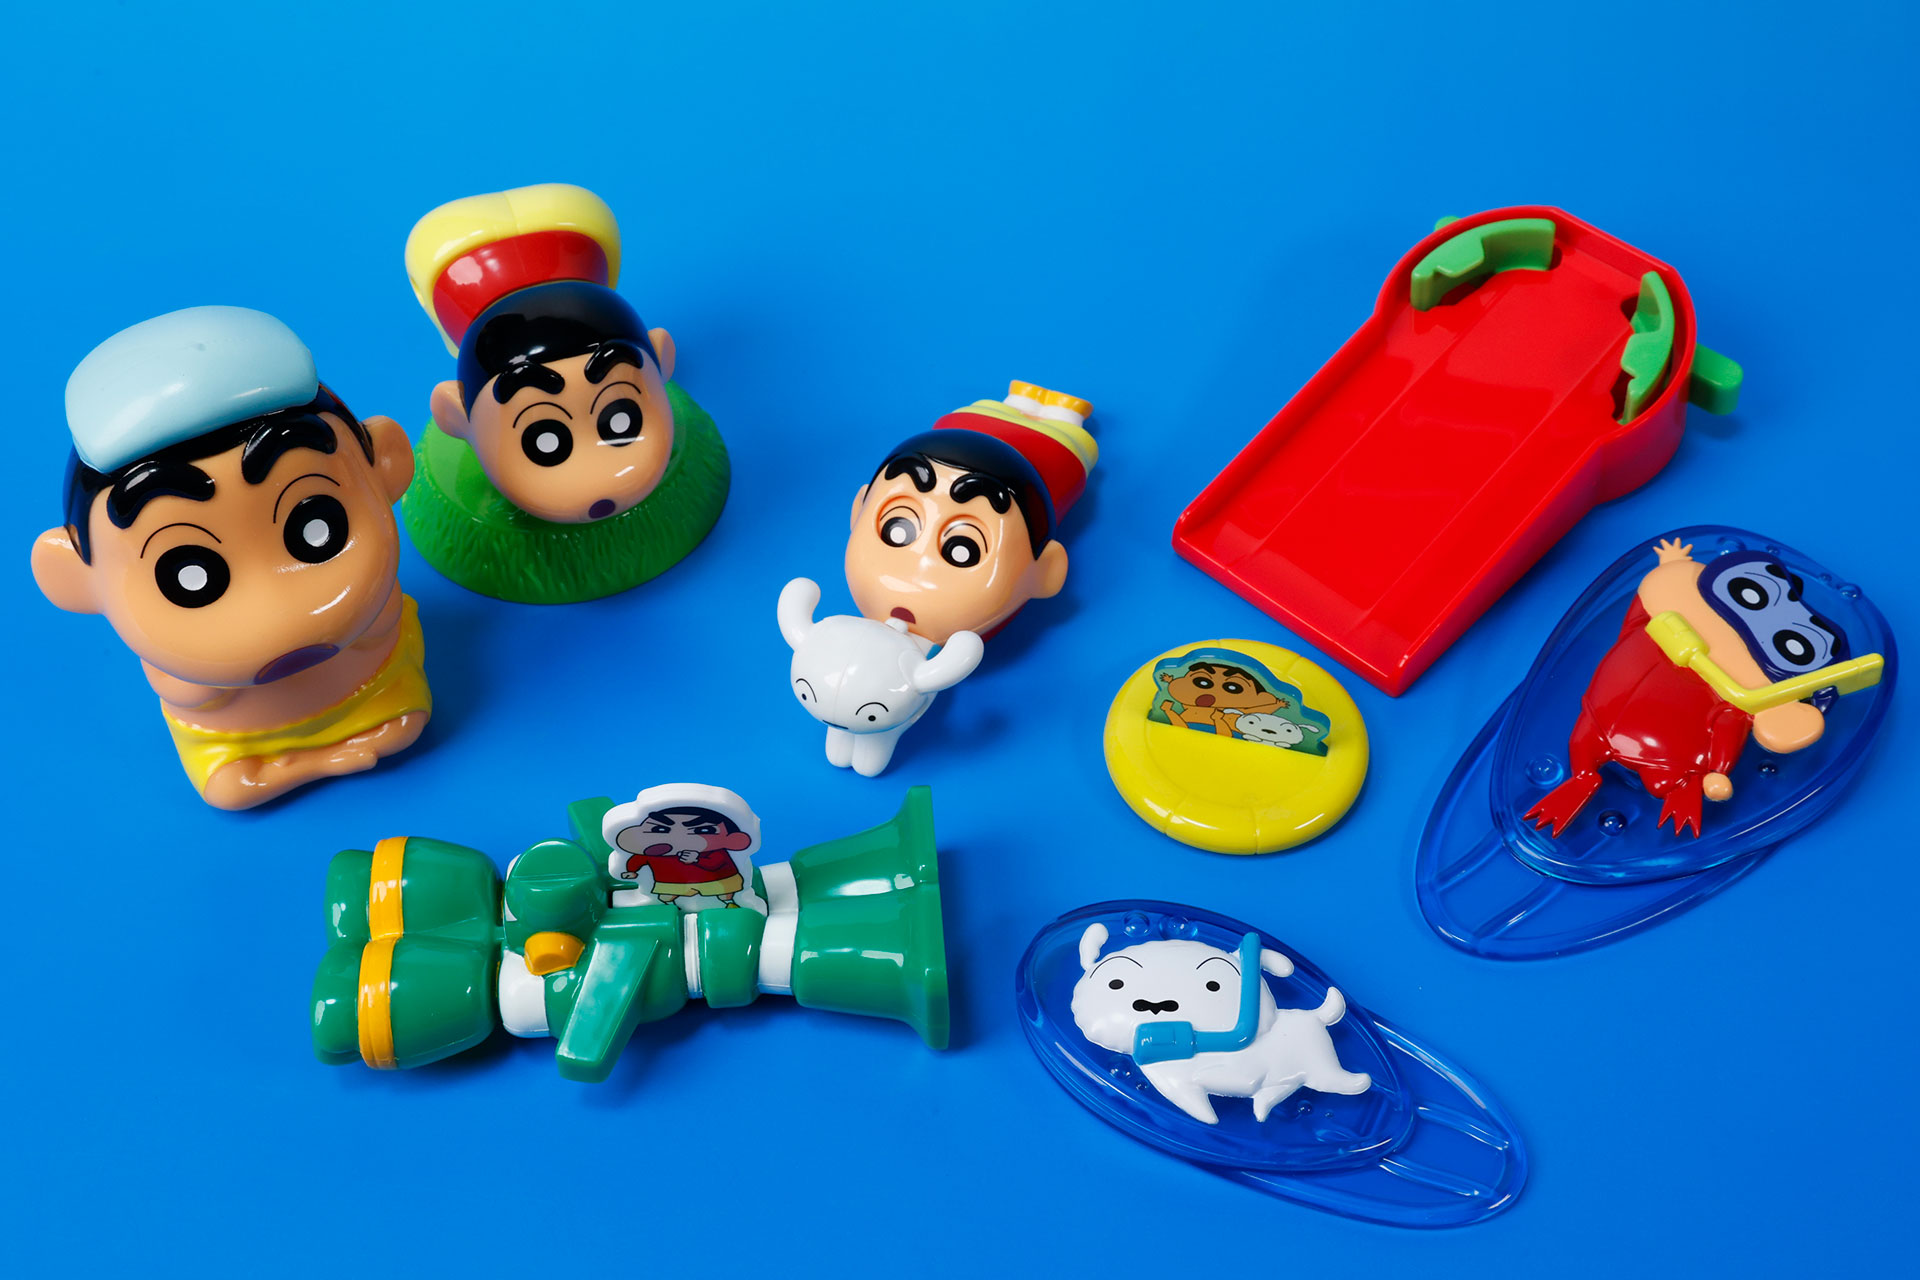 蠟筆小新大鬧麥當勞！10/20 起日本麥當勞將推出可愛又搞怪的《蠟筆小新》系列兒童玩具組